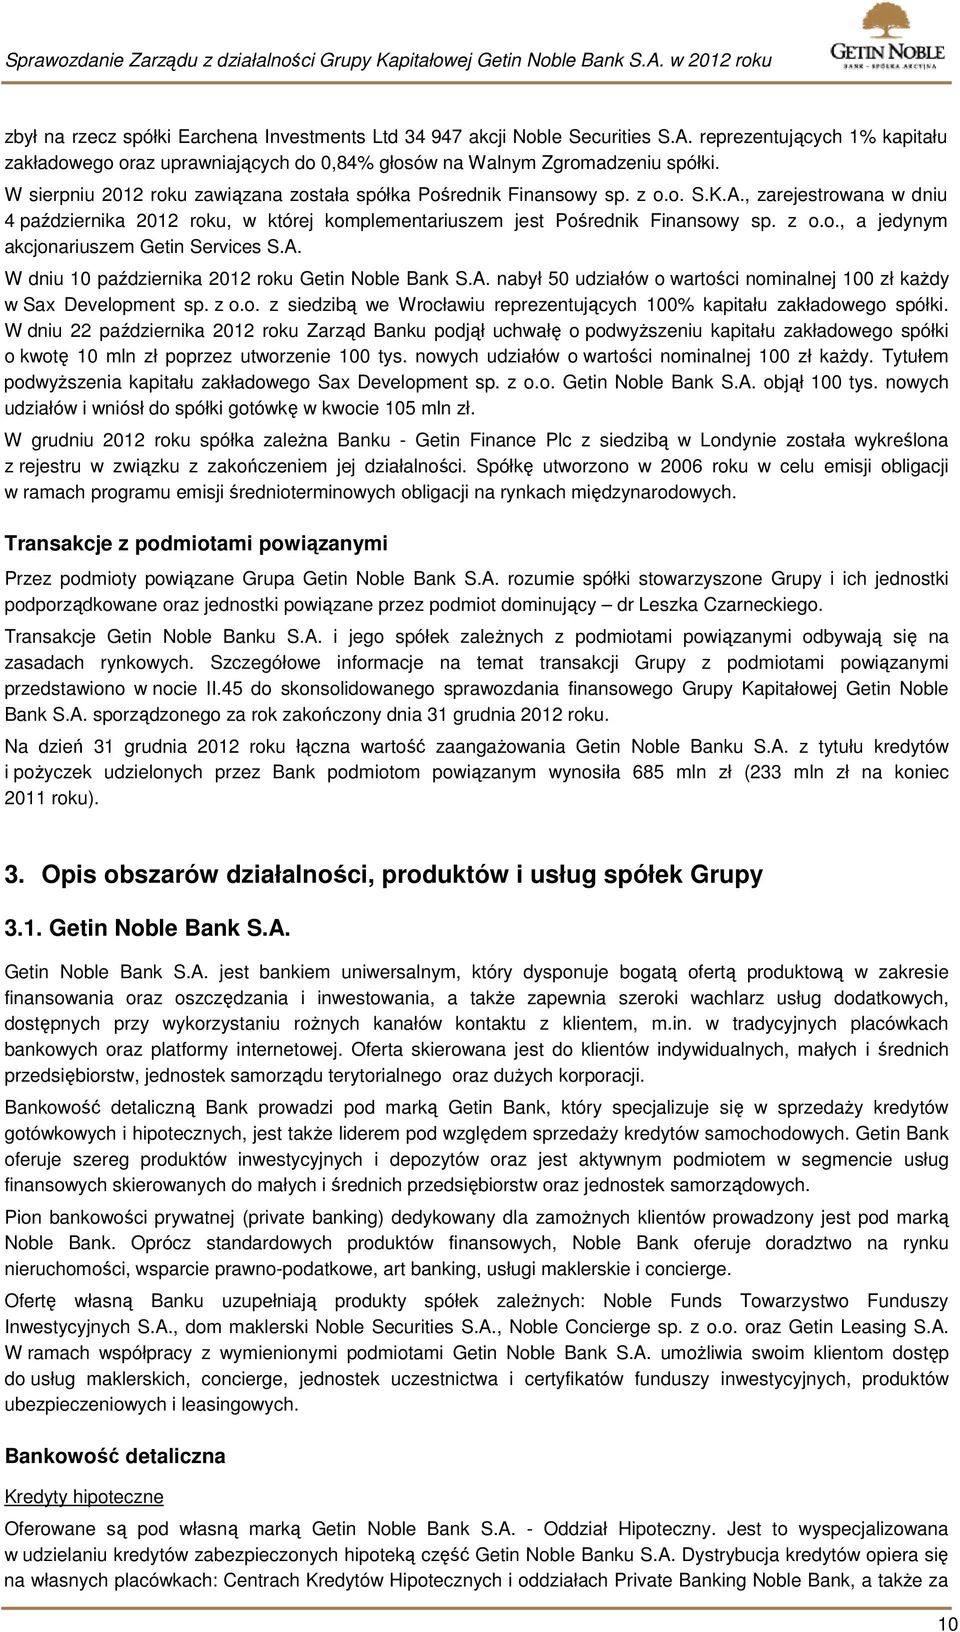 A. W dniu 10 października 2012 roku Getin Noble Bank S.A. nabył 50 udziałów o wartości nominalnej 100 zł każdy w Sax Development sp. z o.o. z siedzibą we Wrocławiu reprezentujących 100% kapitału zakładowego spółki.